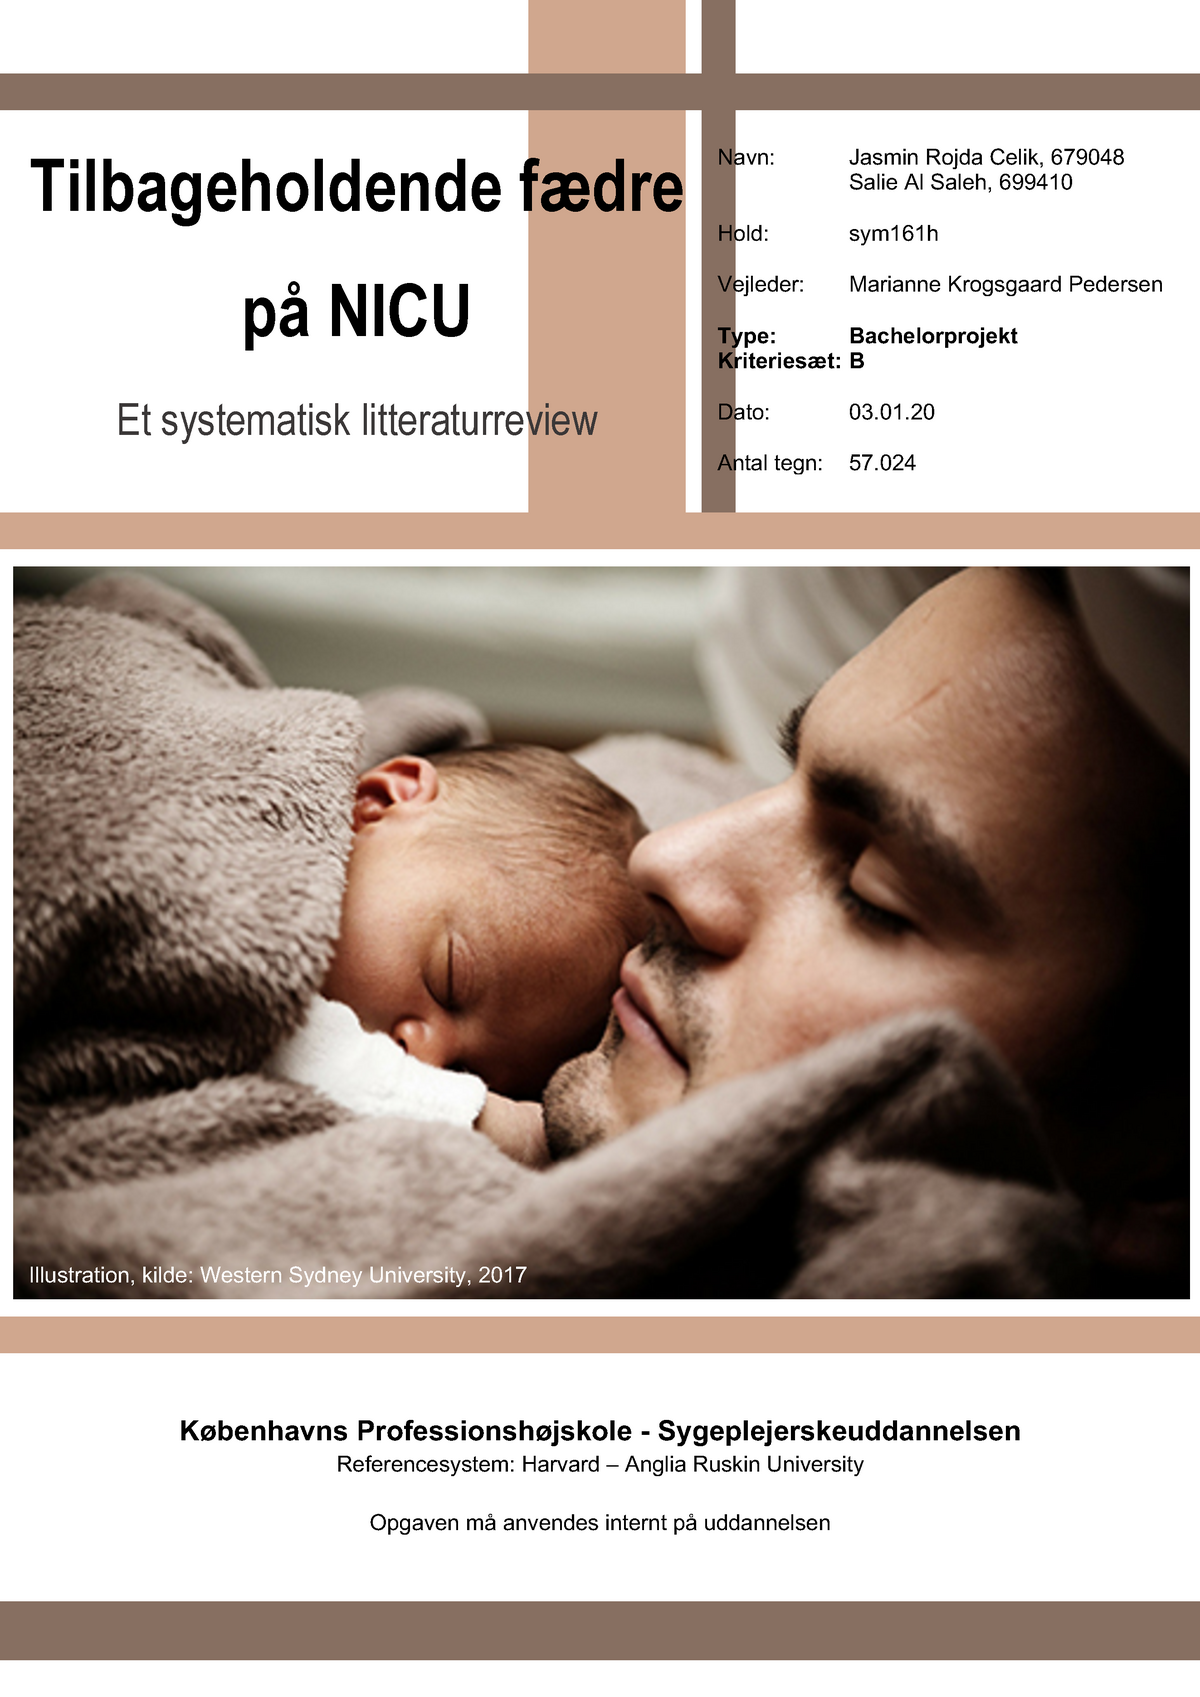 bacheloreksamen 2020 - Tilbageholdende fædre systematisk litteraturreview Navn: Jasmin - Studocu